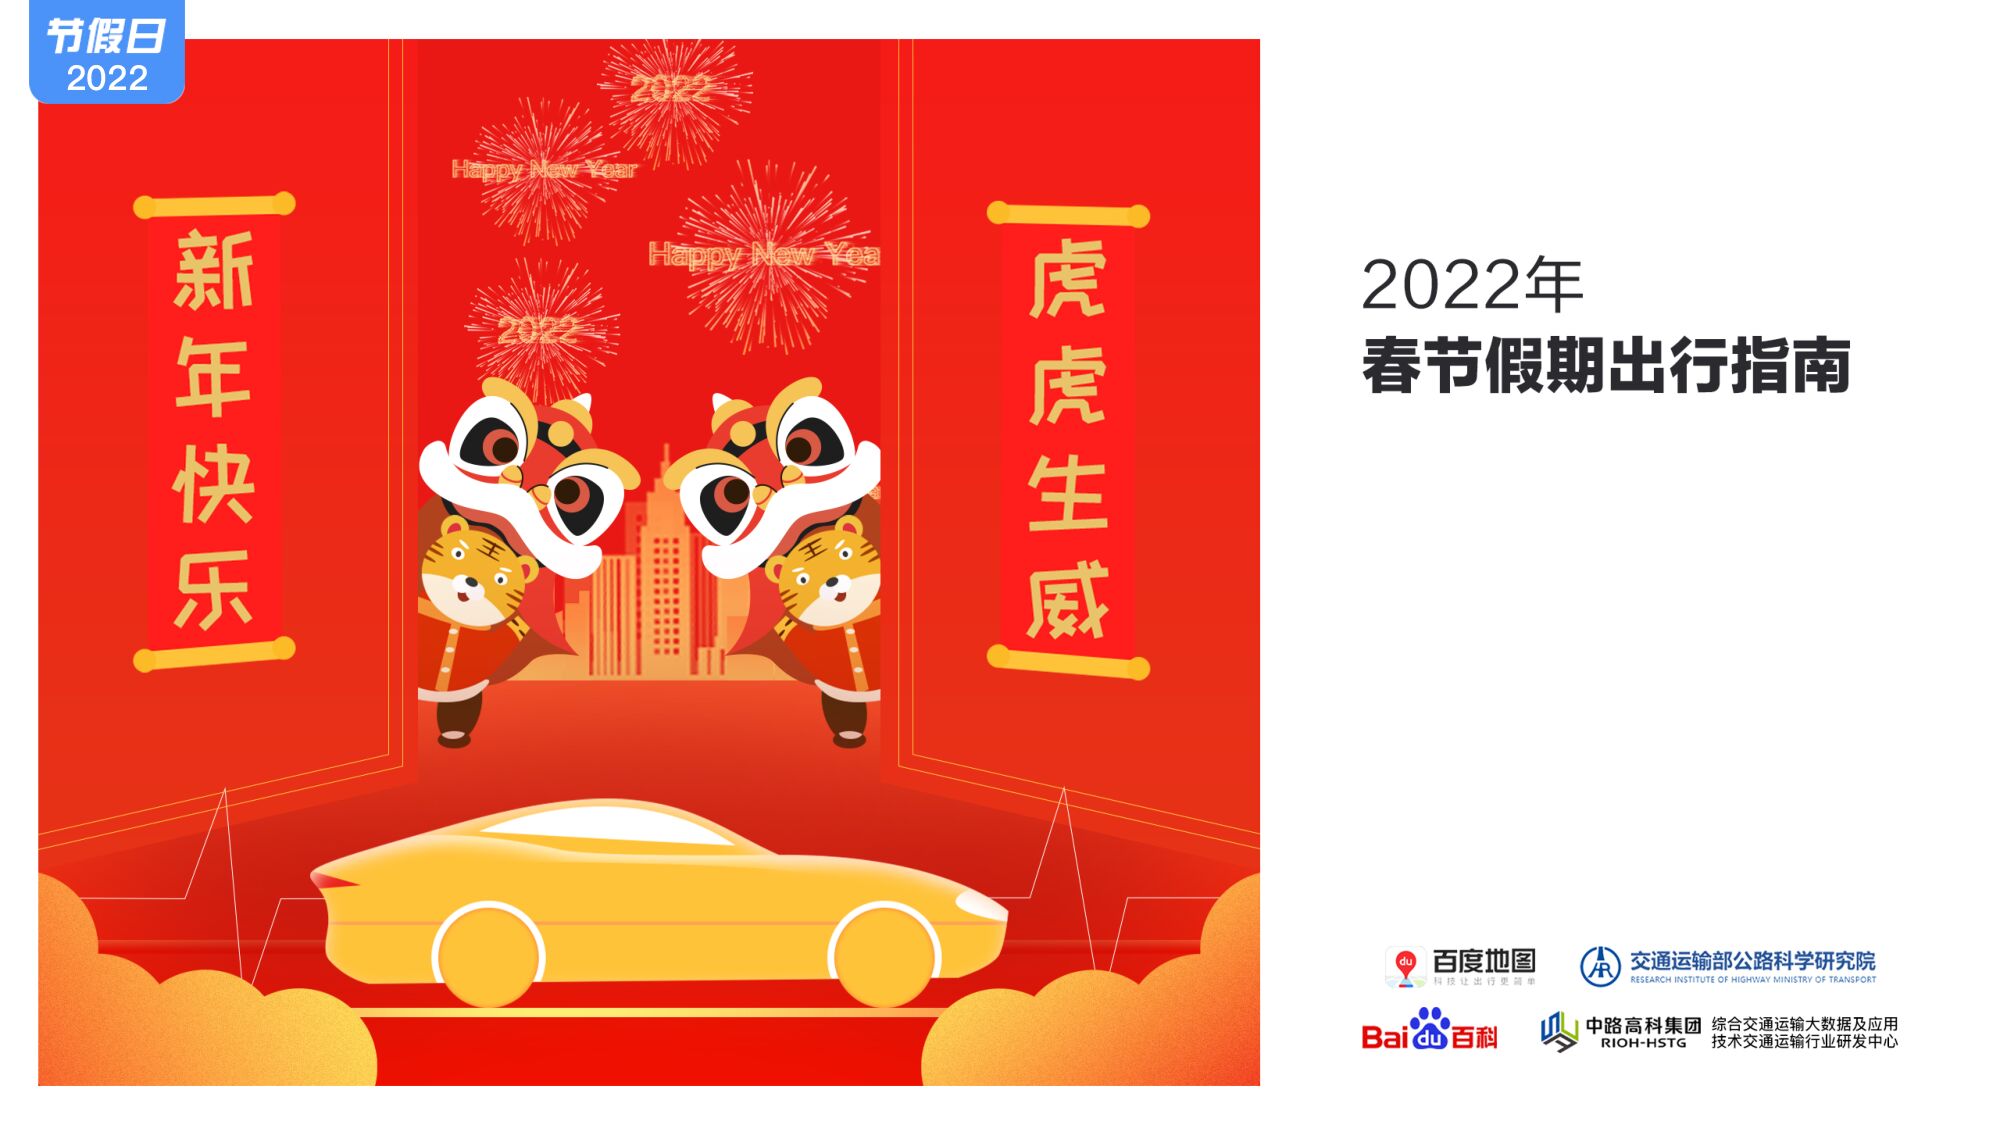 百度地图2022春节假期出行指南